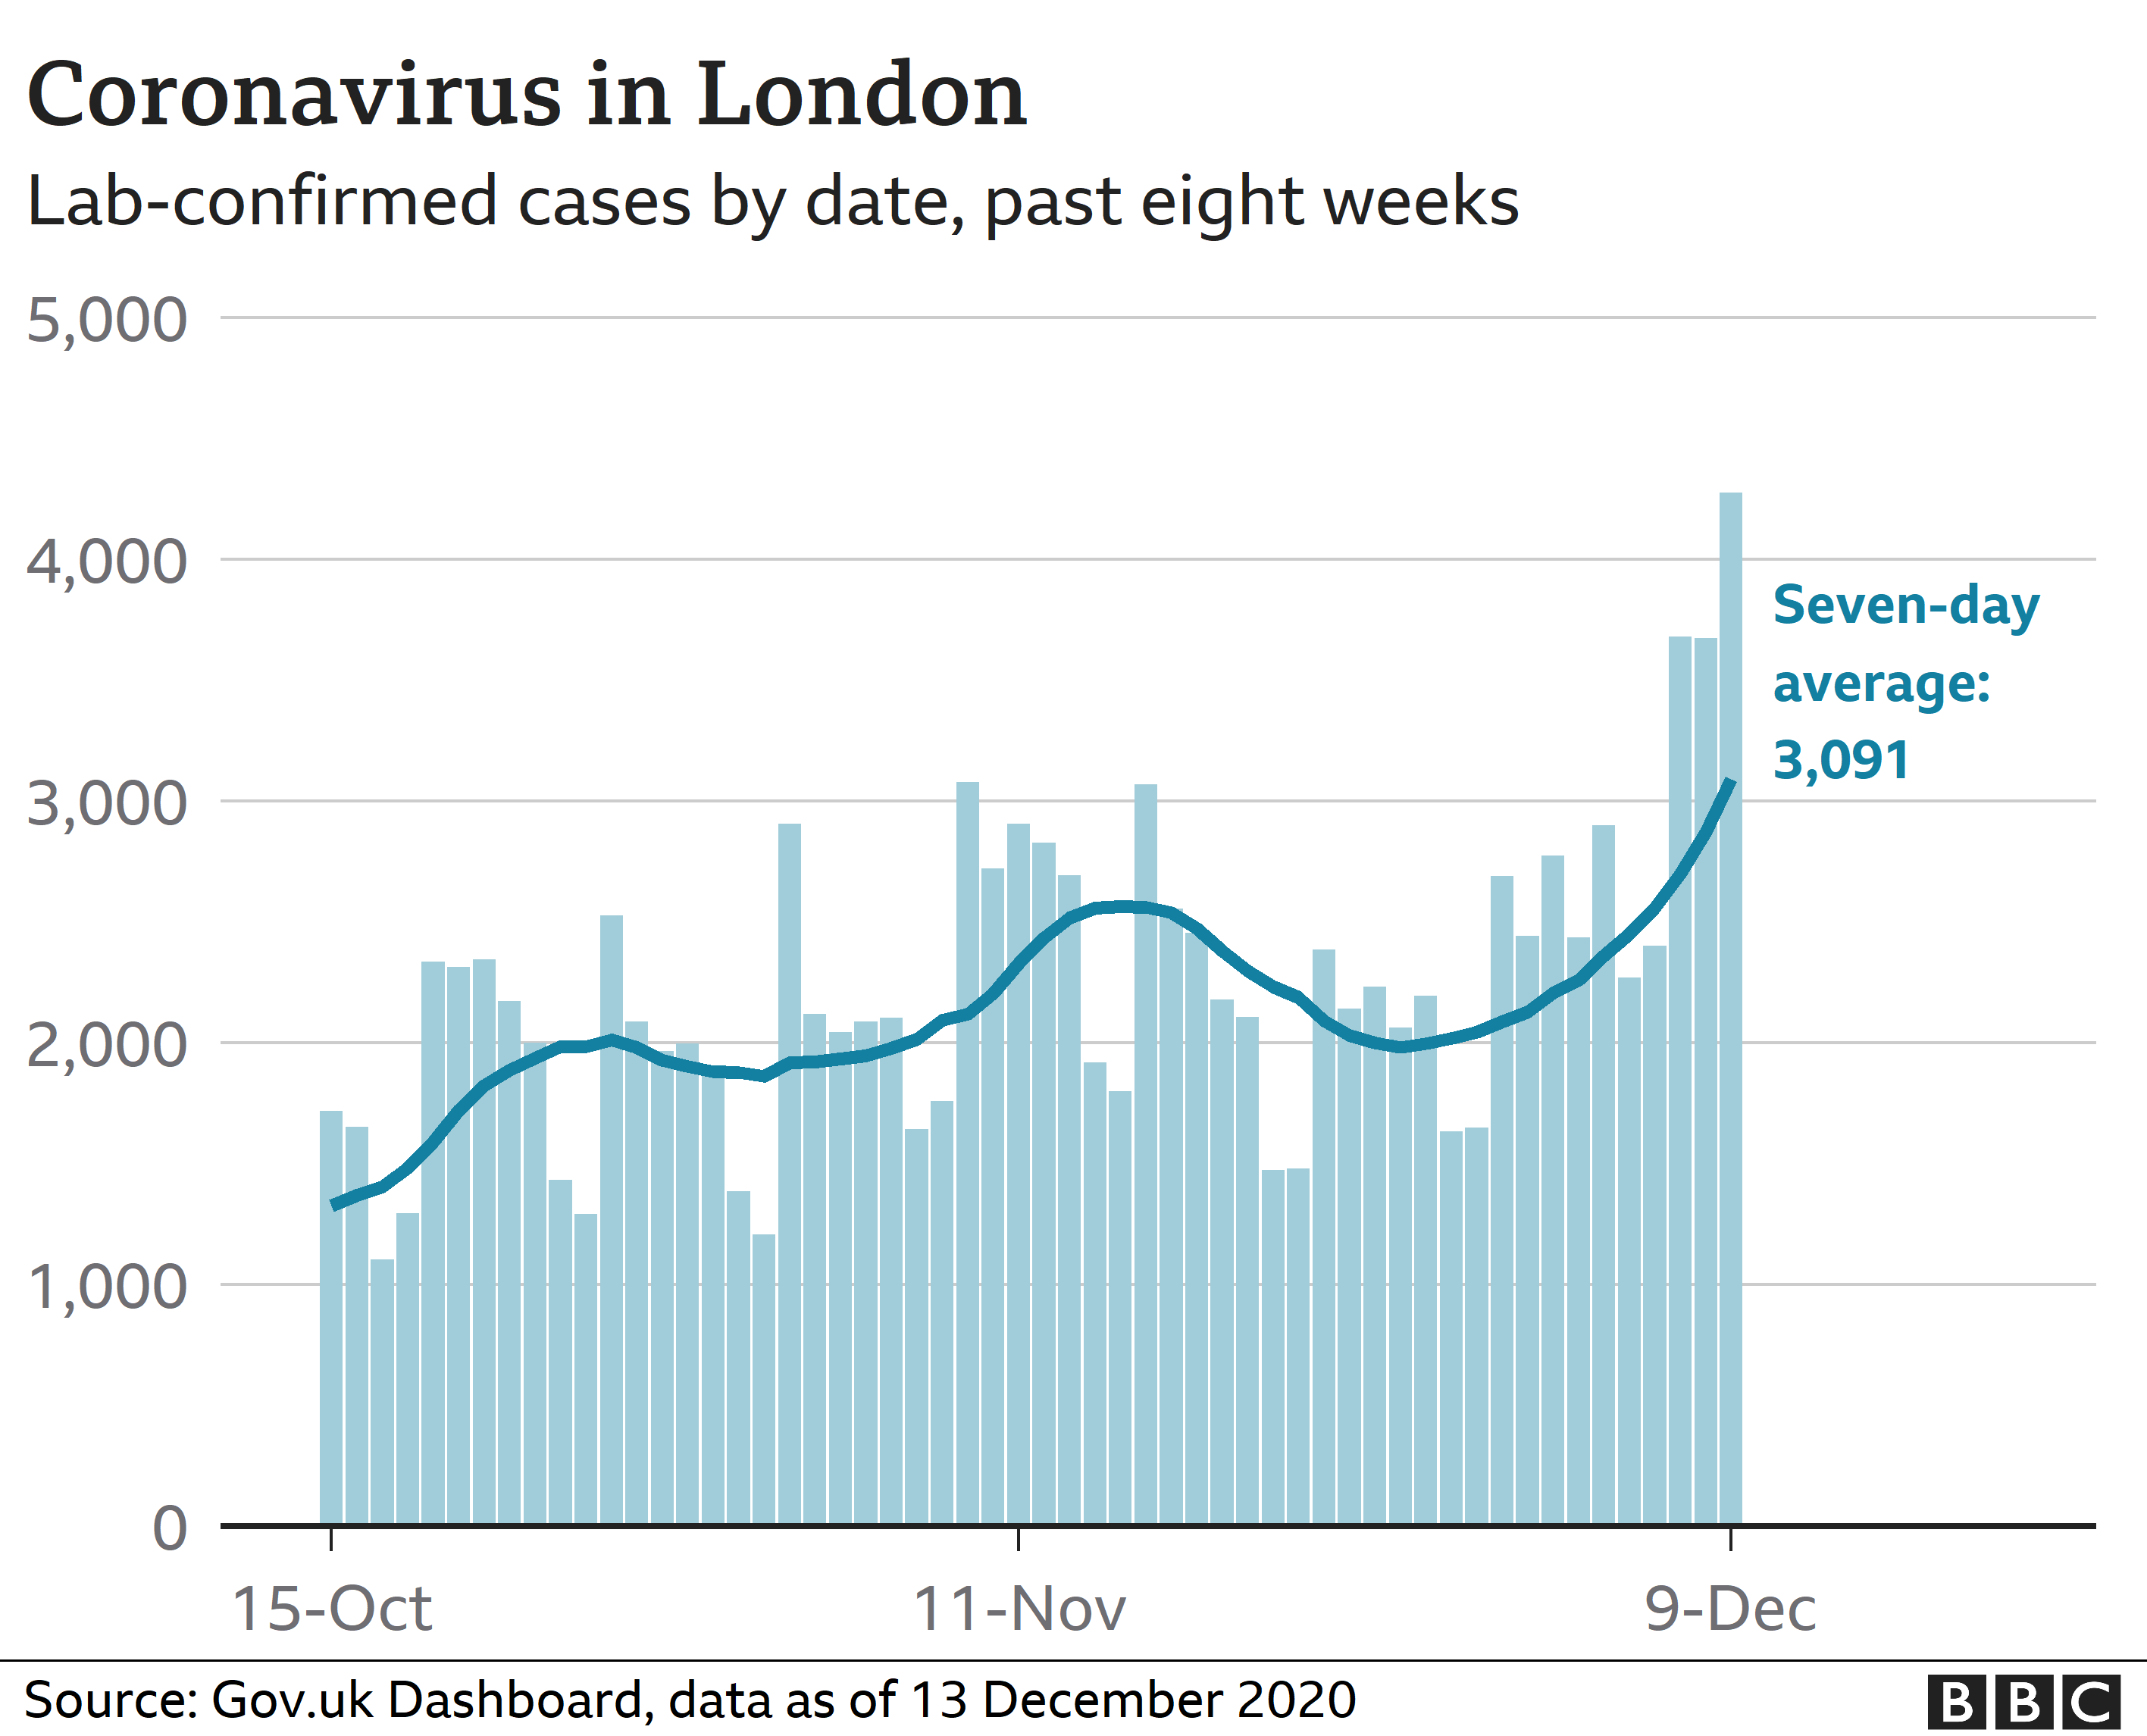 Coronavirus in London - statistics week ending 13 December 2020